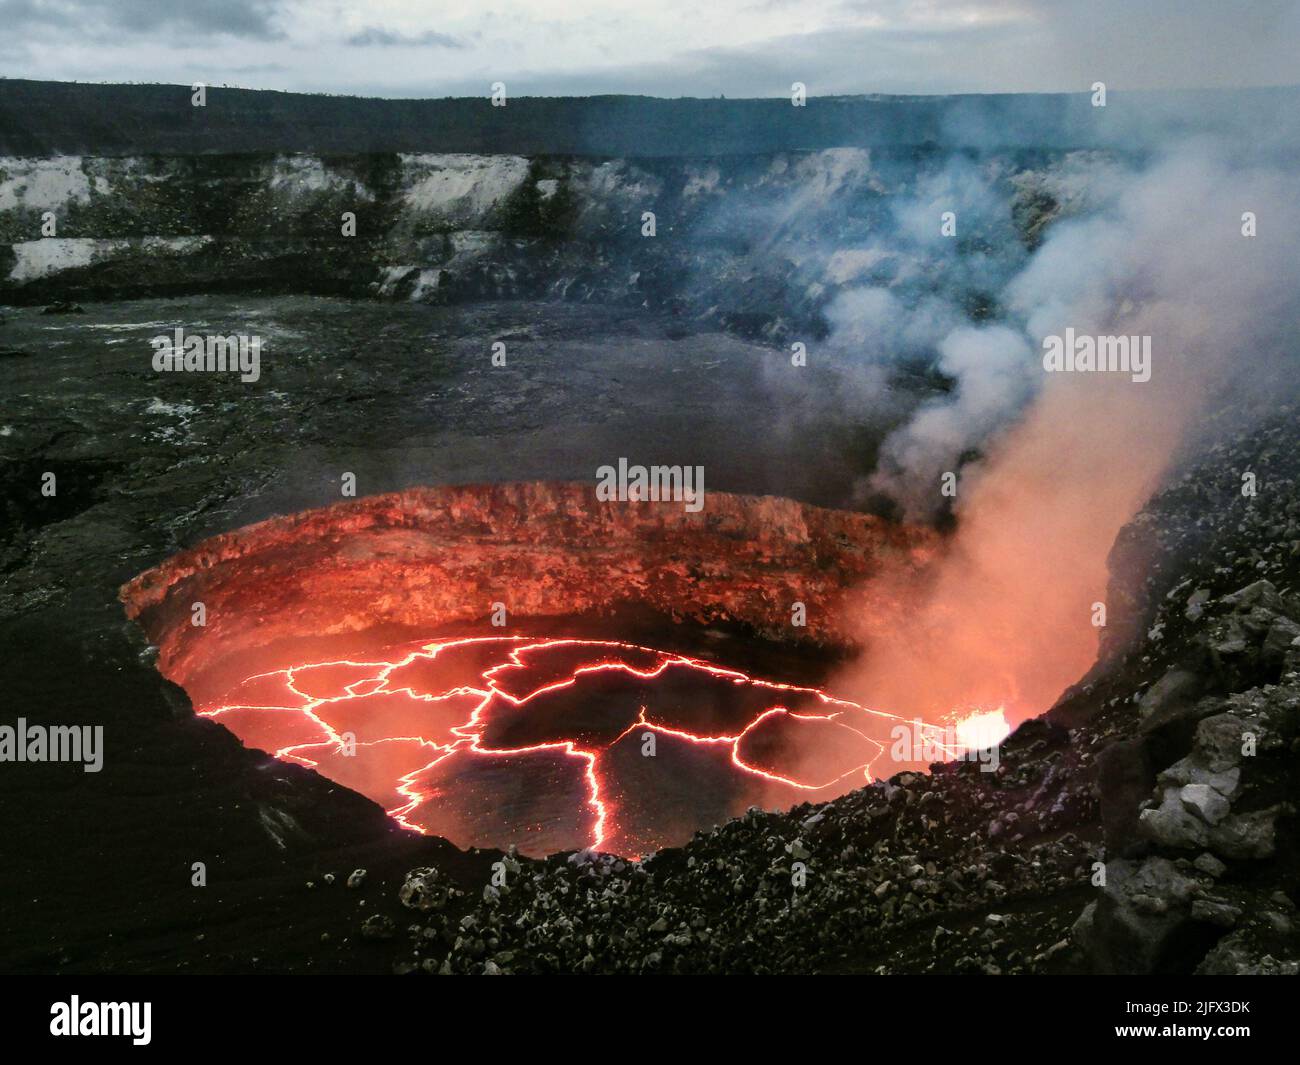 Kilauea Lava Lake, Hawaii, USA. Il lago di lava è contenuto all'interno di un cratere chiamato informalmente il cratere 'Overlook' (a causa della sua posizione immediatamente sotto l'ex vista dei visitatori di Halema?uma?u), e questo cratere si trova all'interno del più grande cratere Halema?uma?u. La foto è stata scattata dal bordo del cratere Halema?uma?u. Il lago di lava si trova a circa 50 m (160 piedi) sotto il bordo del cratere di osservazione. Il livello è sceso leggermente il giorno precedente, lasciando un impiallacciatura nera di lava sulle pareti del cratere appena sopra il margine attuale e facilmente visibile in questa foto. Credito: USGS Foto Stock